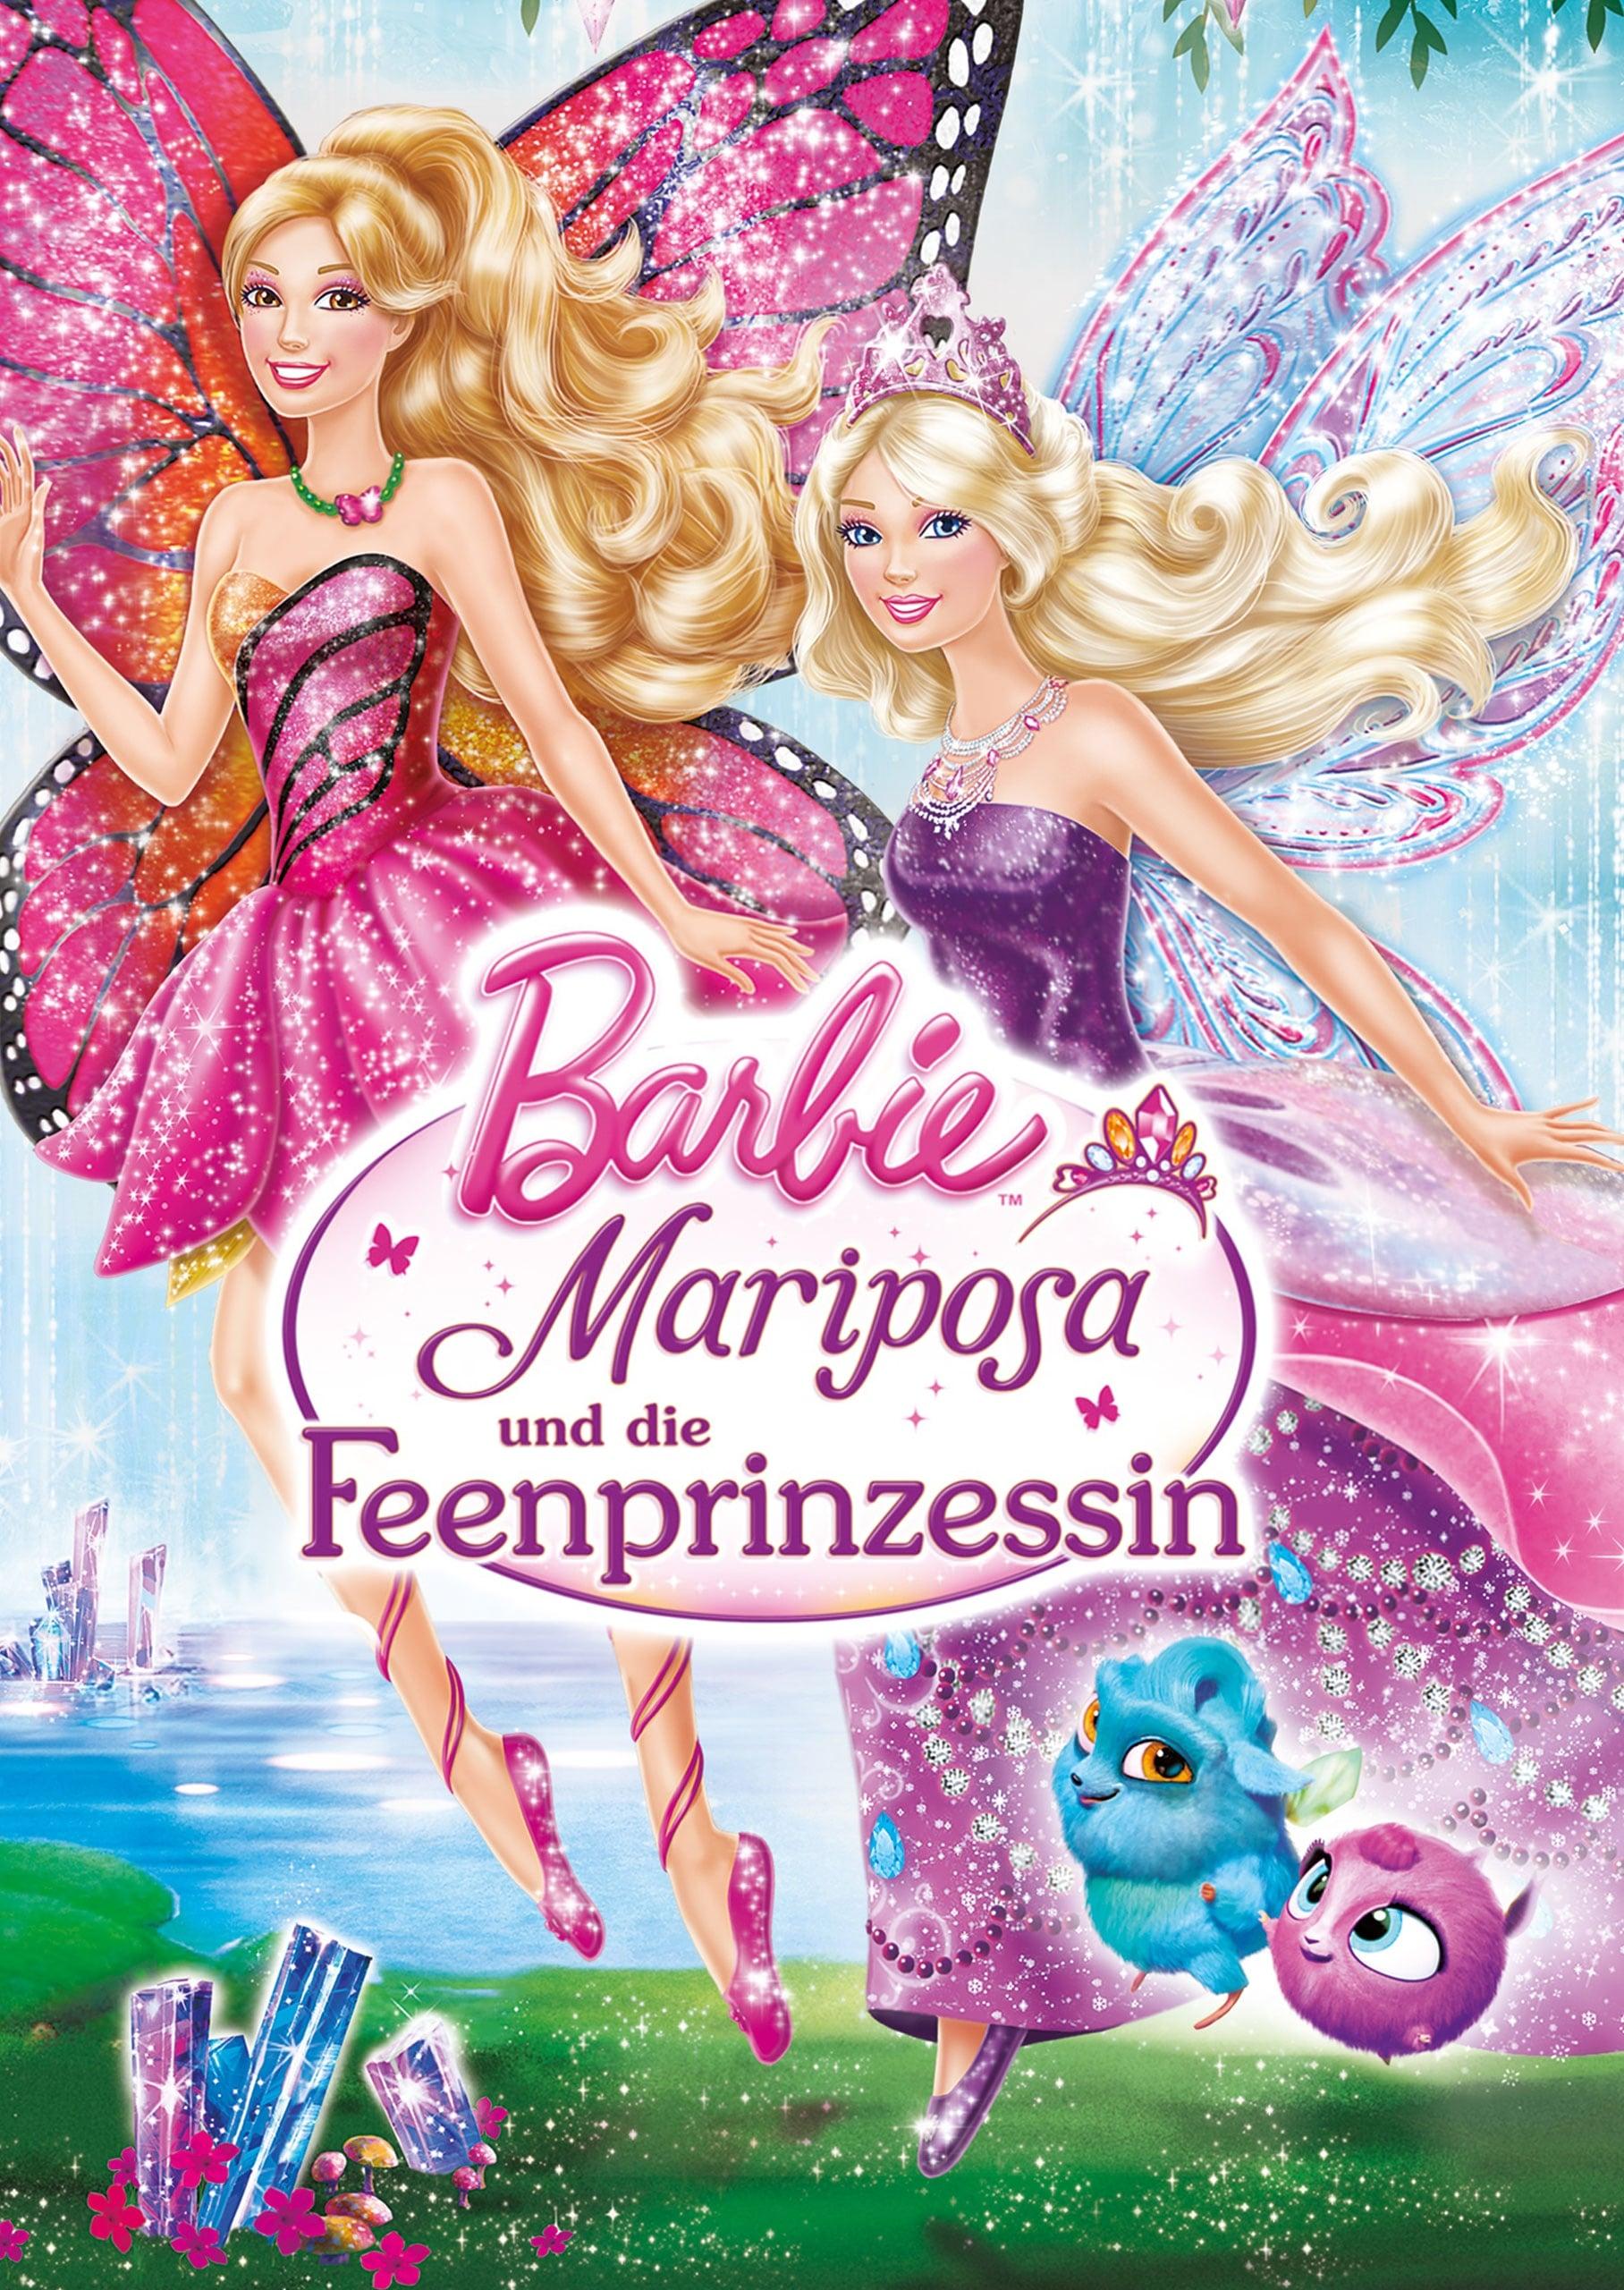 Barbie - Mariposa und die Feenprinzessin poster